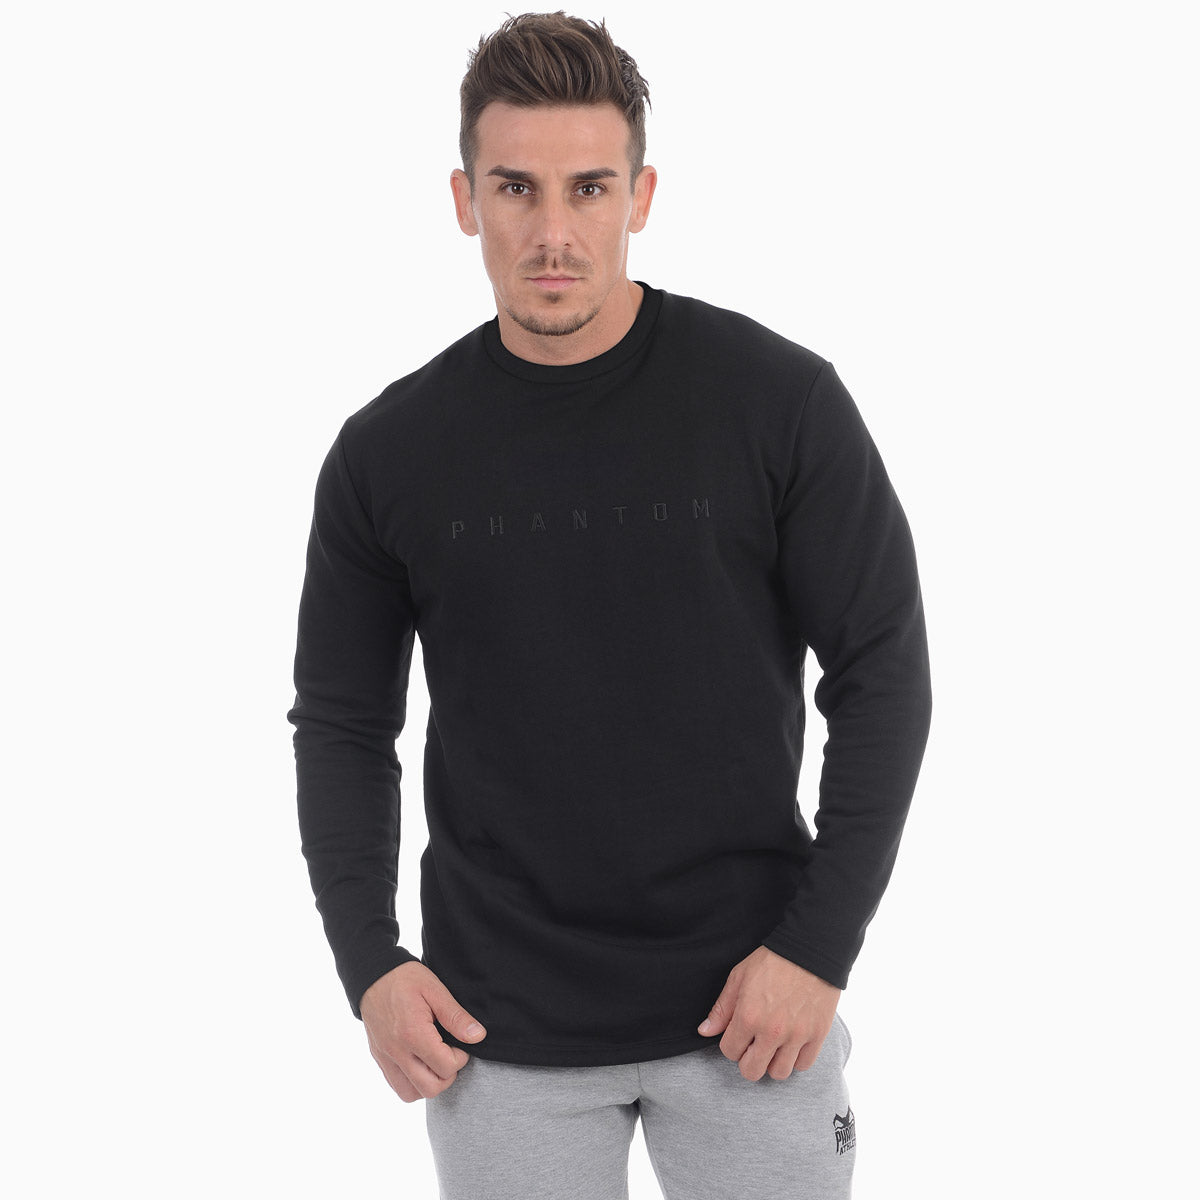 Sweater Vantage - Schwarz